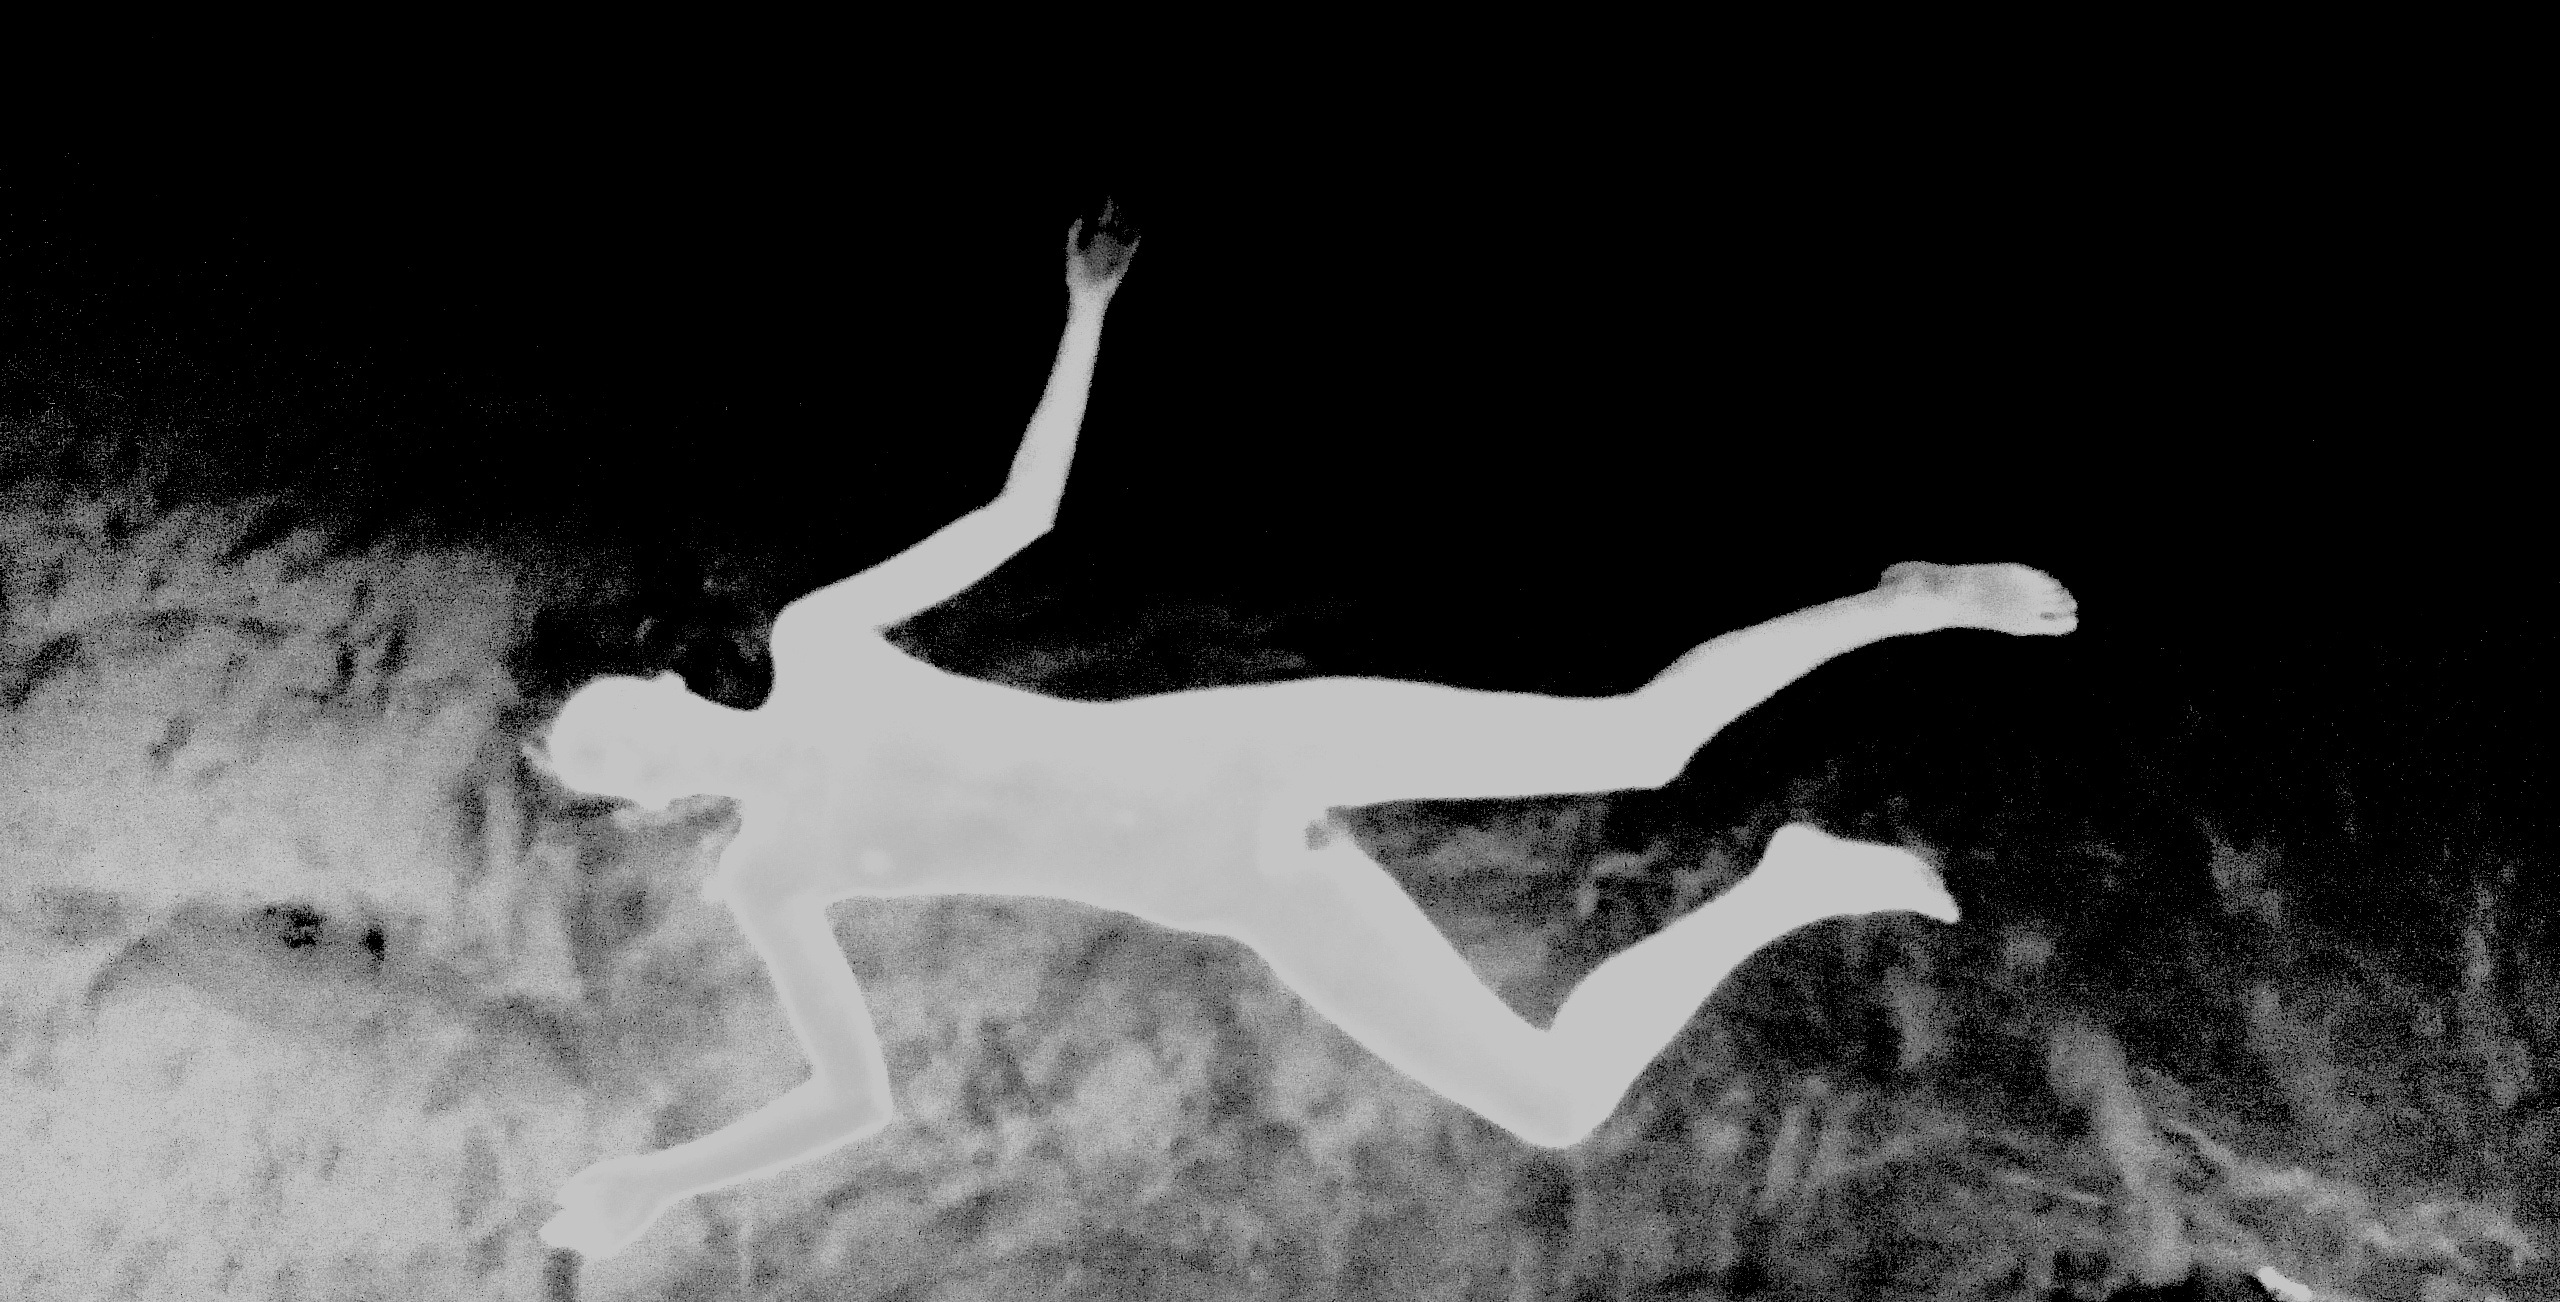 Cenit/Nadir. Tratamiento fotográfico de Olmo Z. de un fotograma de Ninfomaniac película de Lars von Trier. Julio 2015